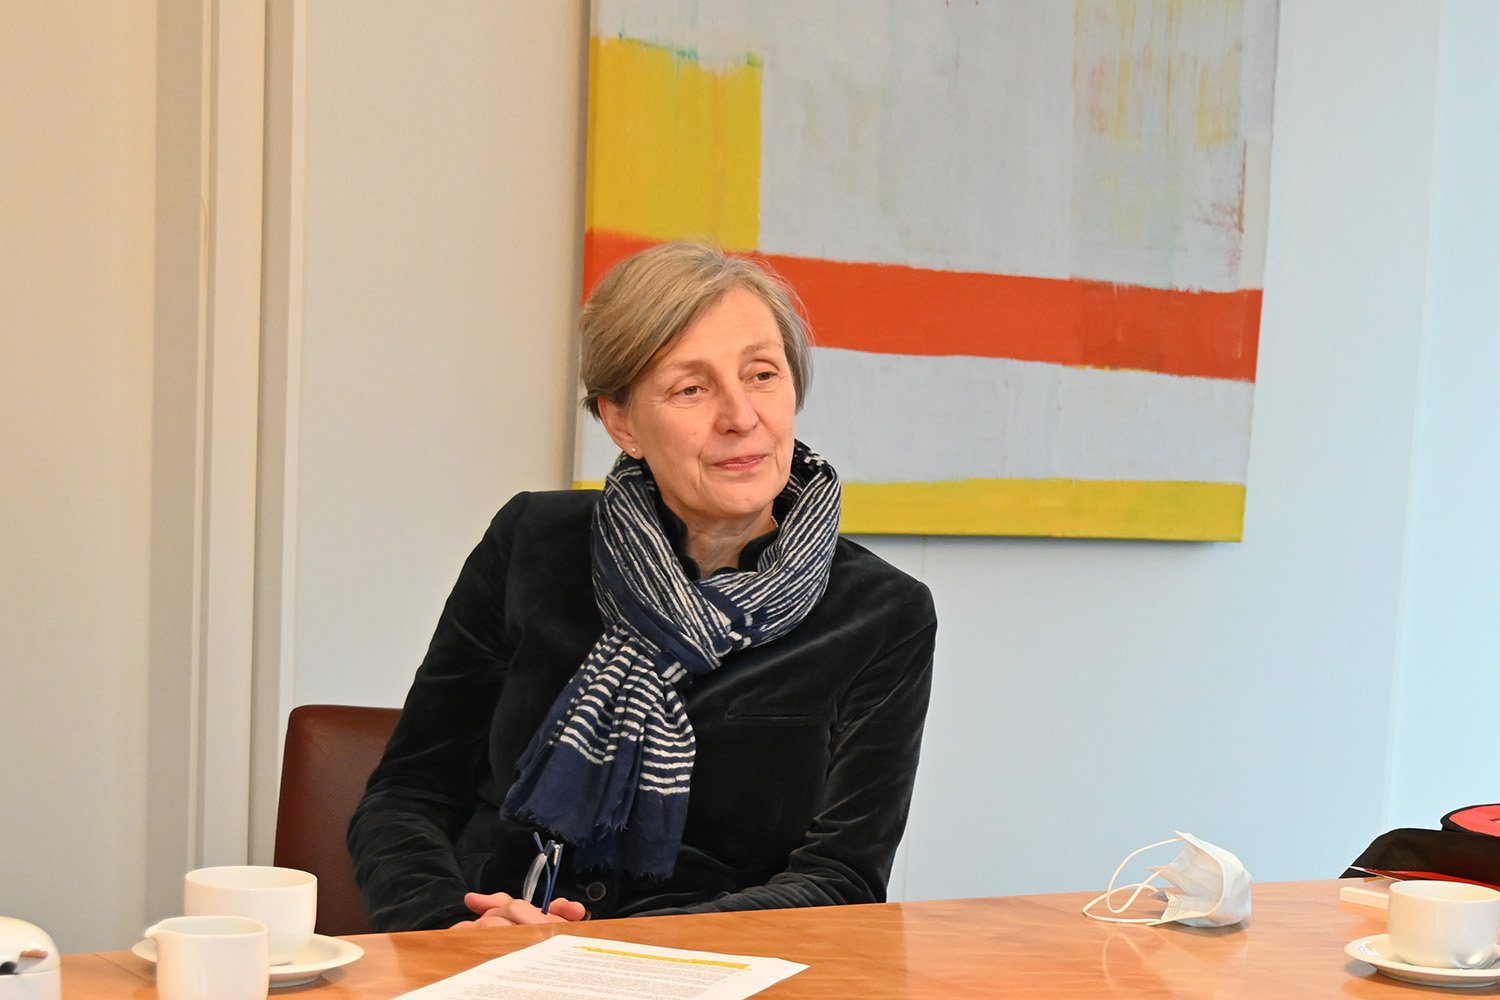 Dr. Ursula Schoen in der Interviewsituation an einem Tisch sitzend.